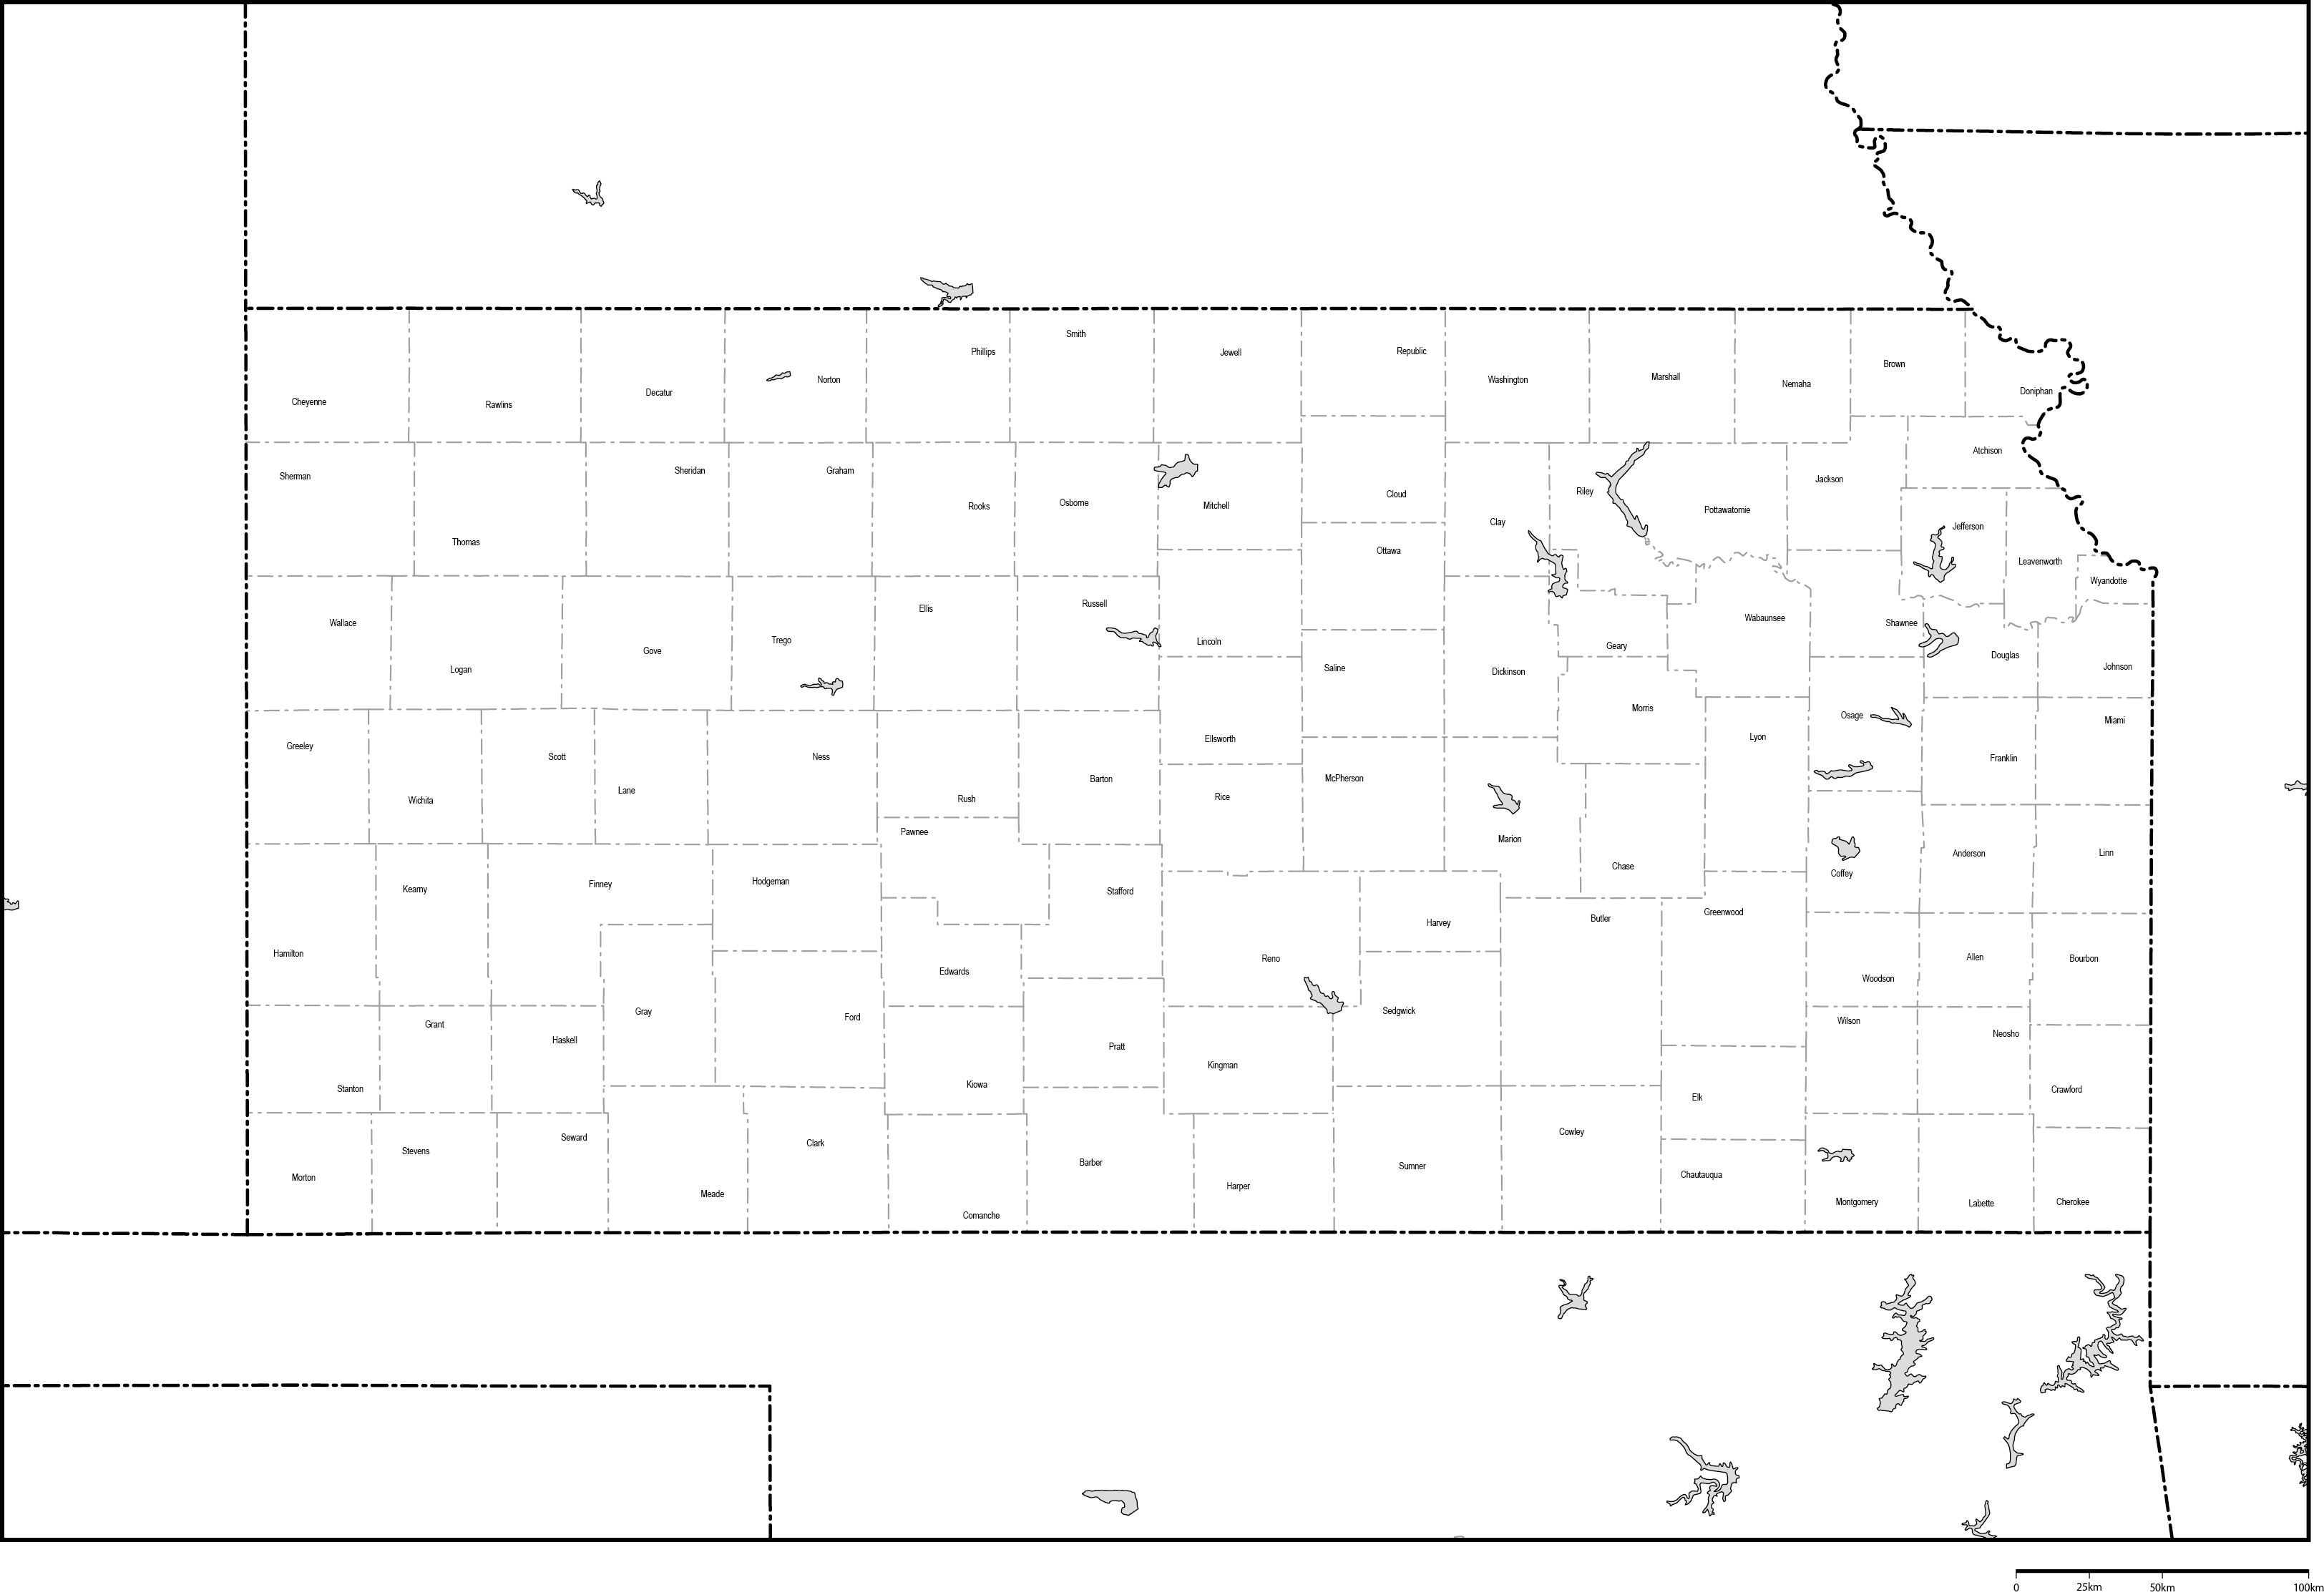 カンザス州郡分け白地図郡名あり(英語)フリーデータの画像